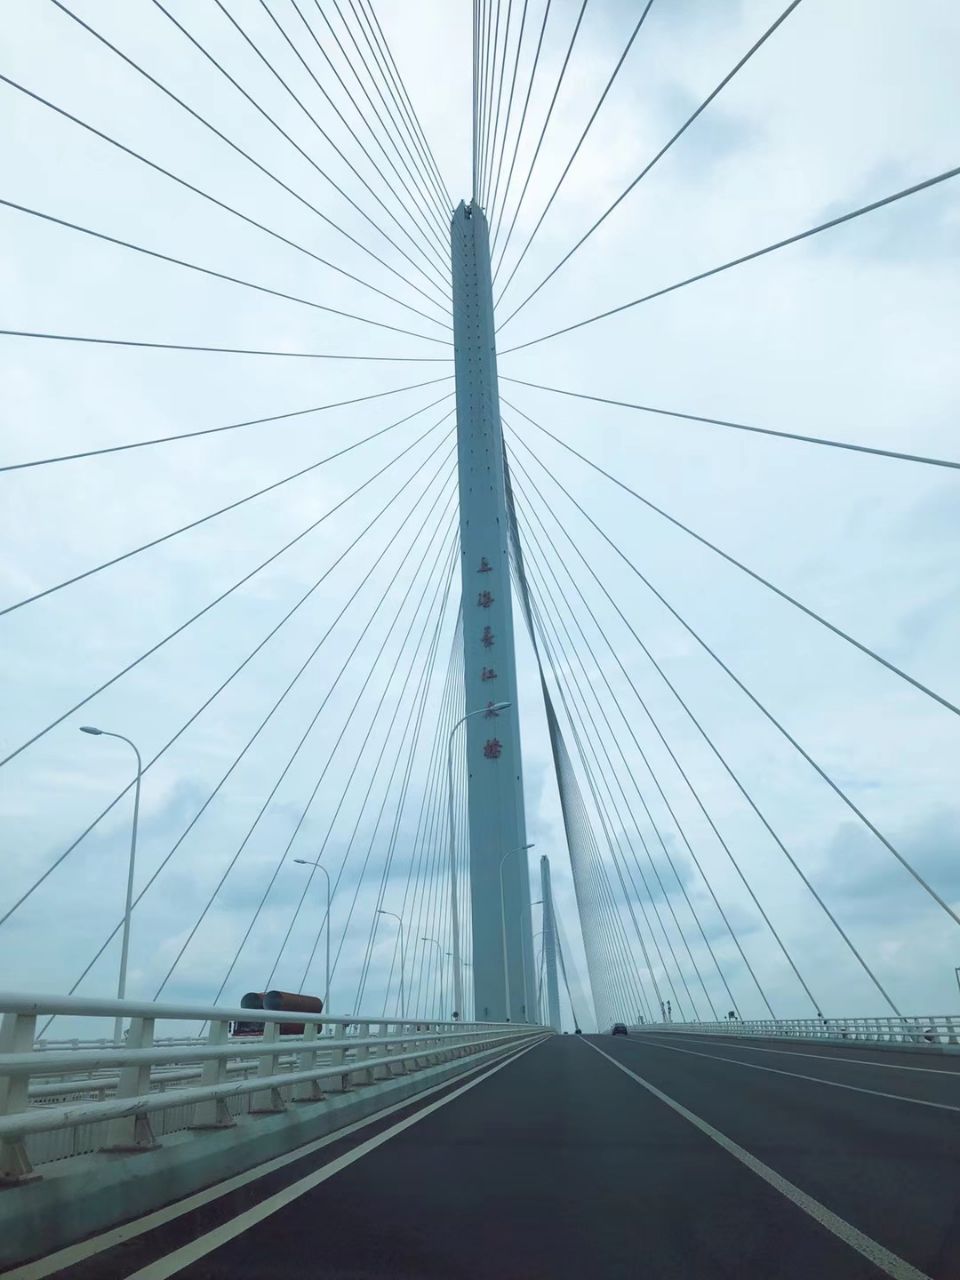 上海长江大桥全是16多公里,是连接崇明岛与长兴岛唯一的一个陆上交通